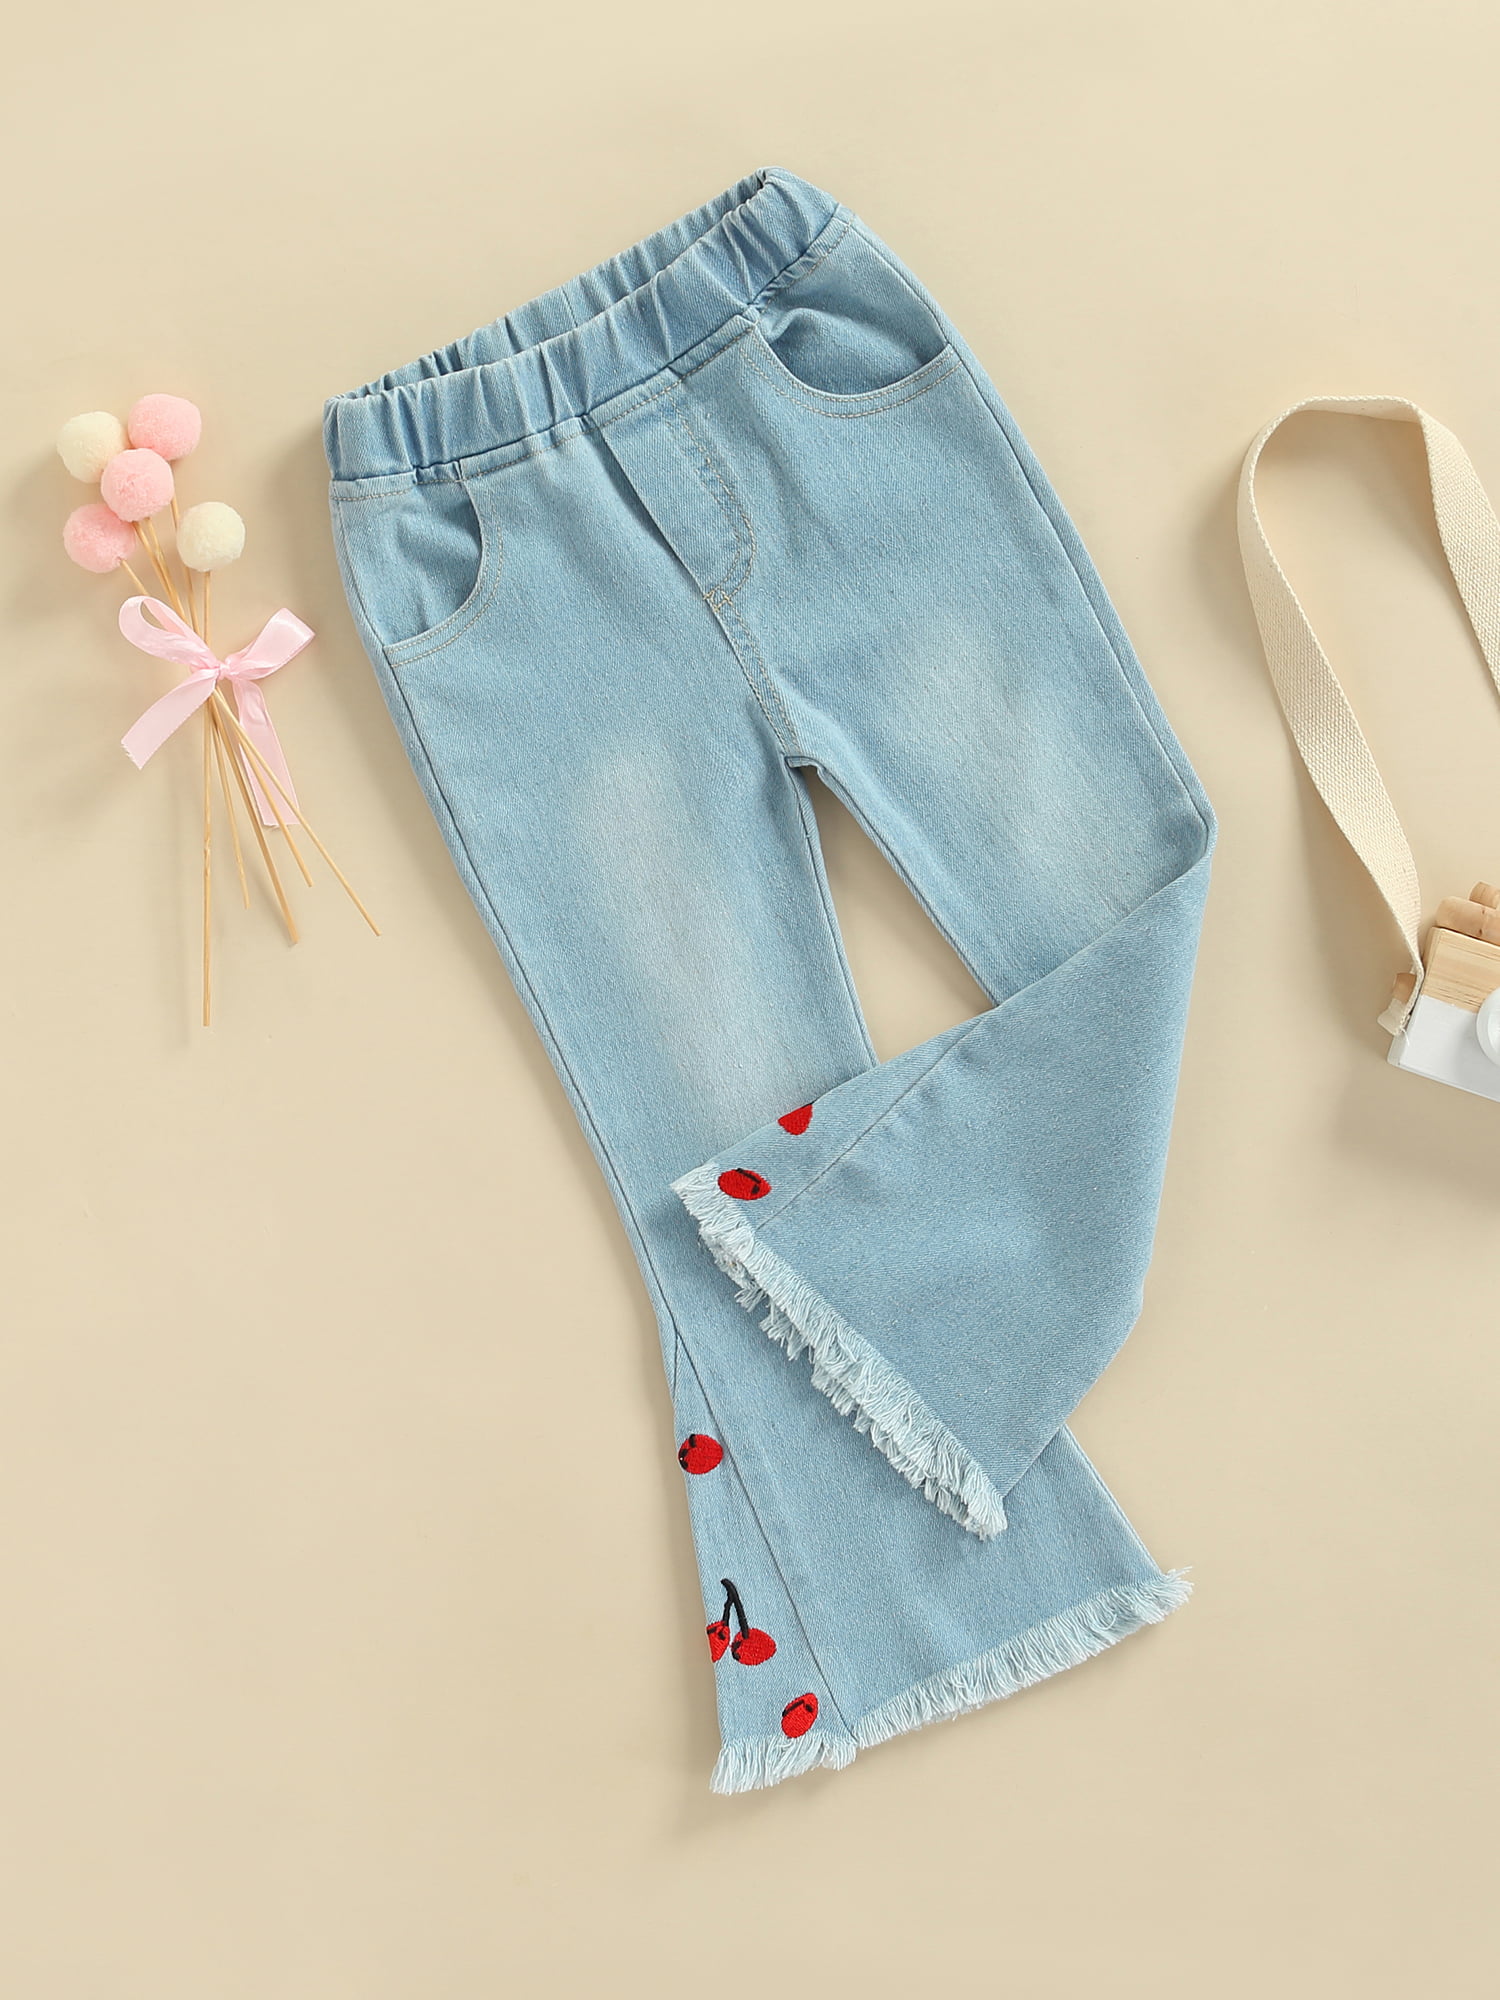 Kmbangi Little Girl's Denim Pants Cherry Embroidered Elastic